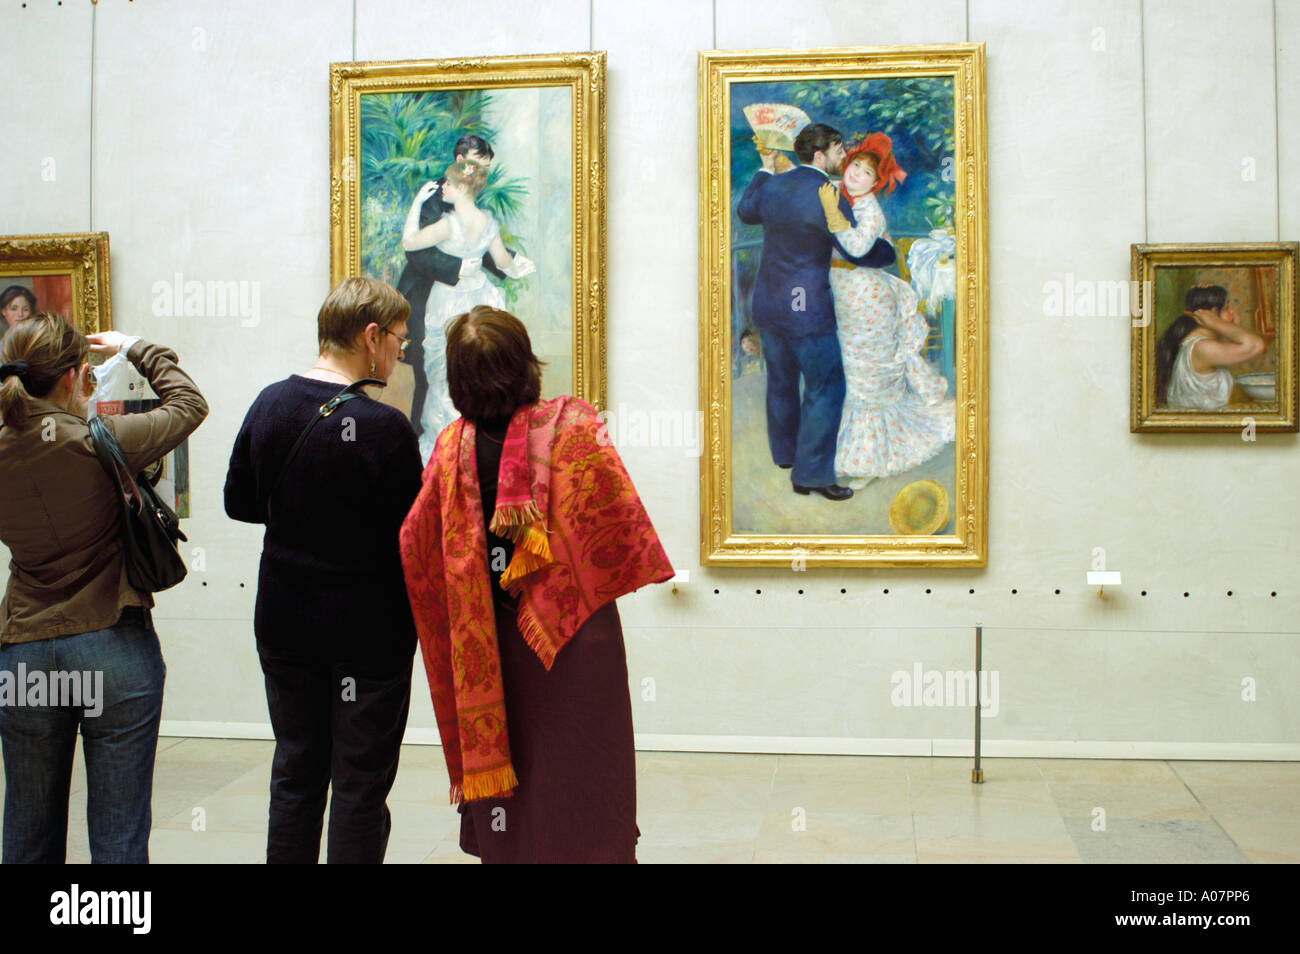 Femmes regardant des peintures Paris France intérieur 'peintures impressionnistes' Galerie Musée d'Orsay, Musée d'Orsay, Renoir, Paris, beaux-arts Banque D'Images